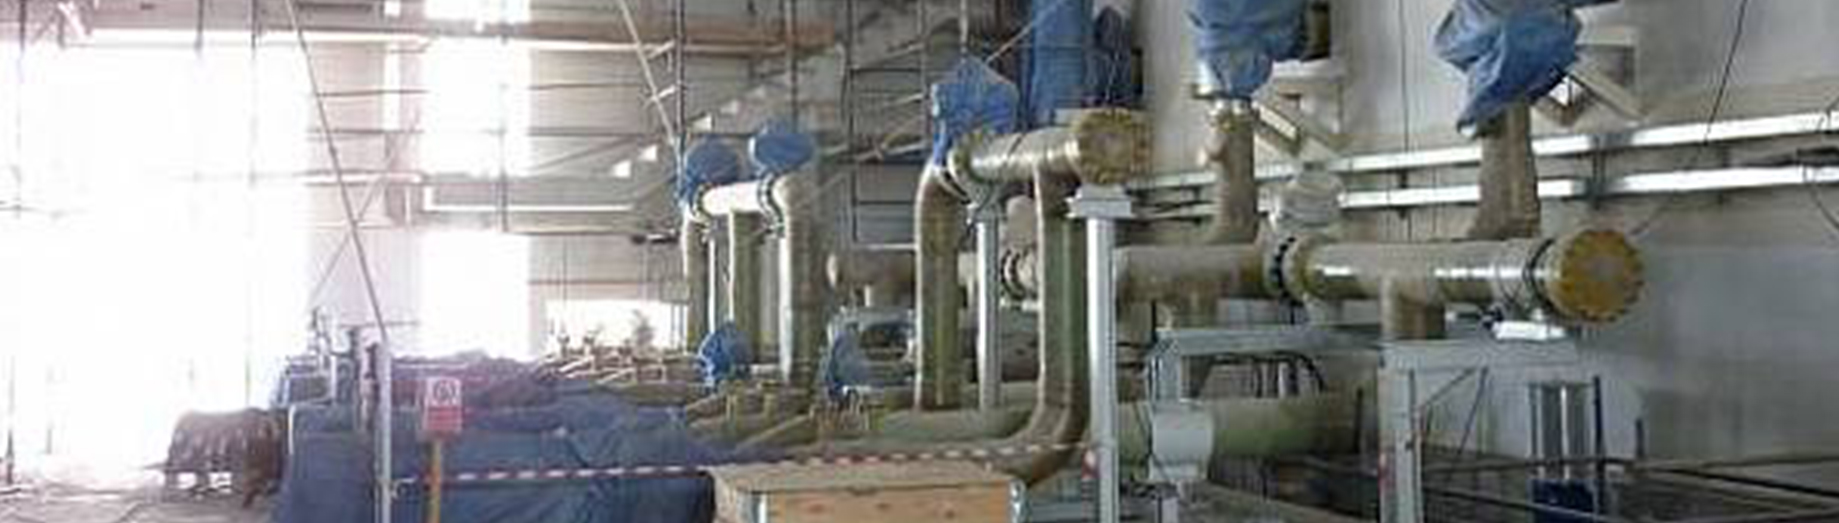 Saadiyat Island Wastewater Treatment Plant STP 2